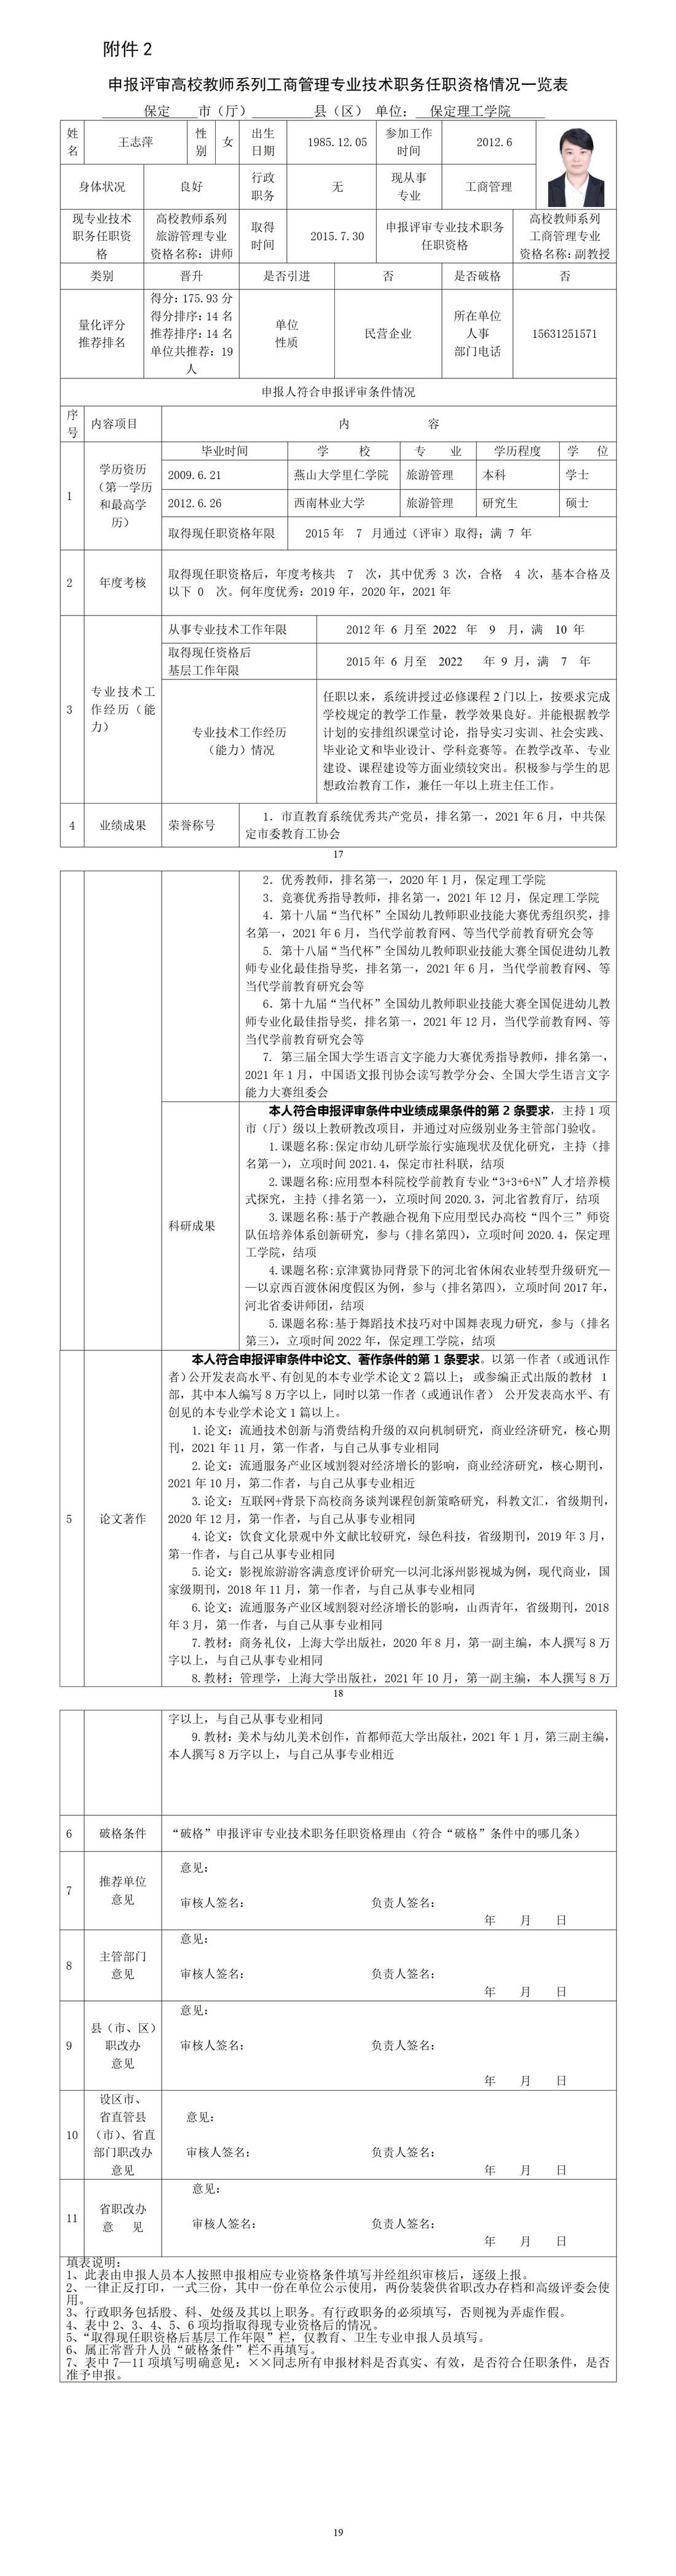 王志萍任职资格情况一览表